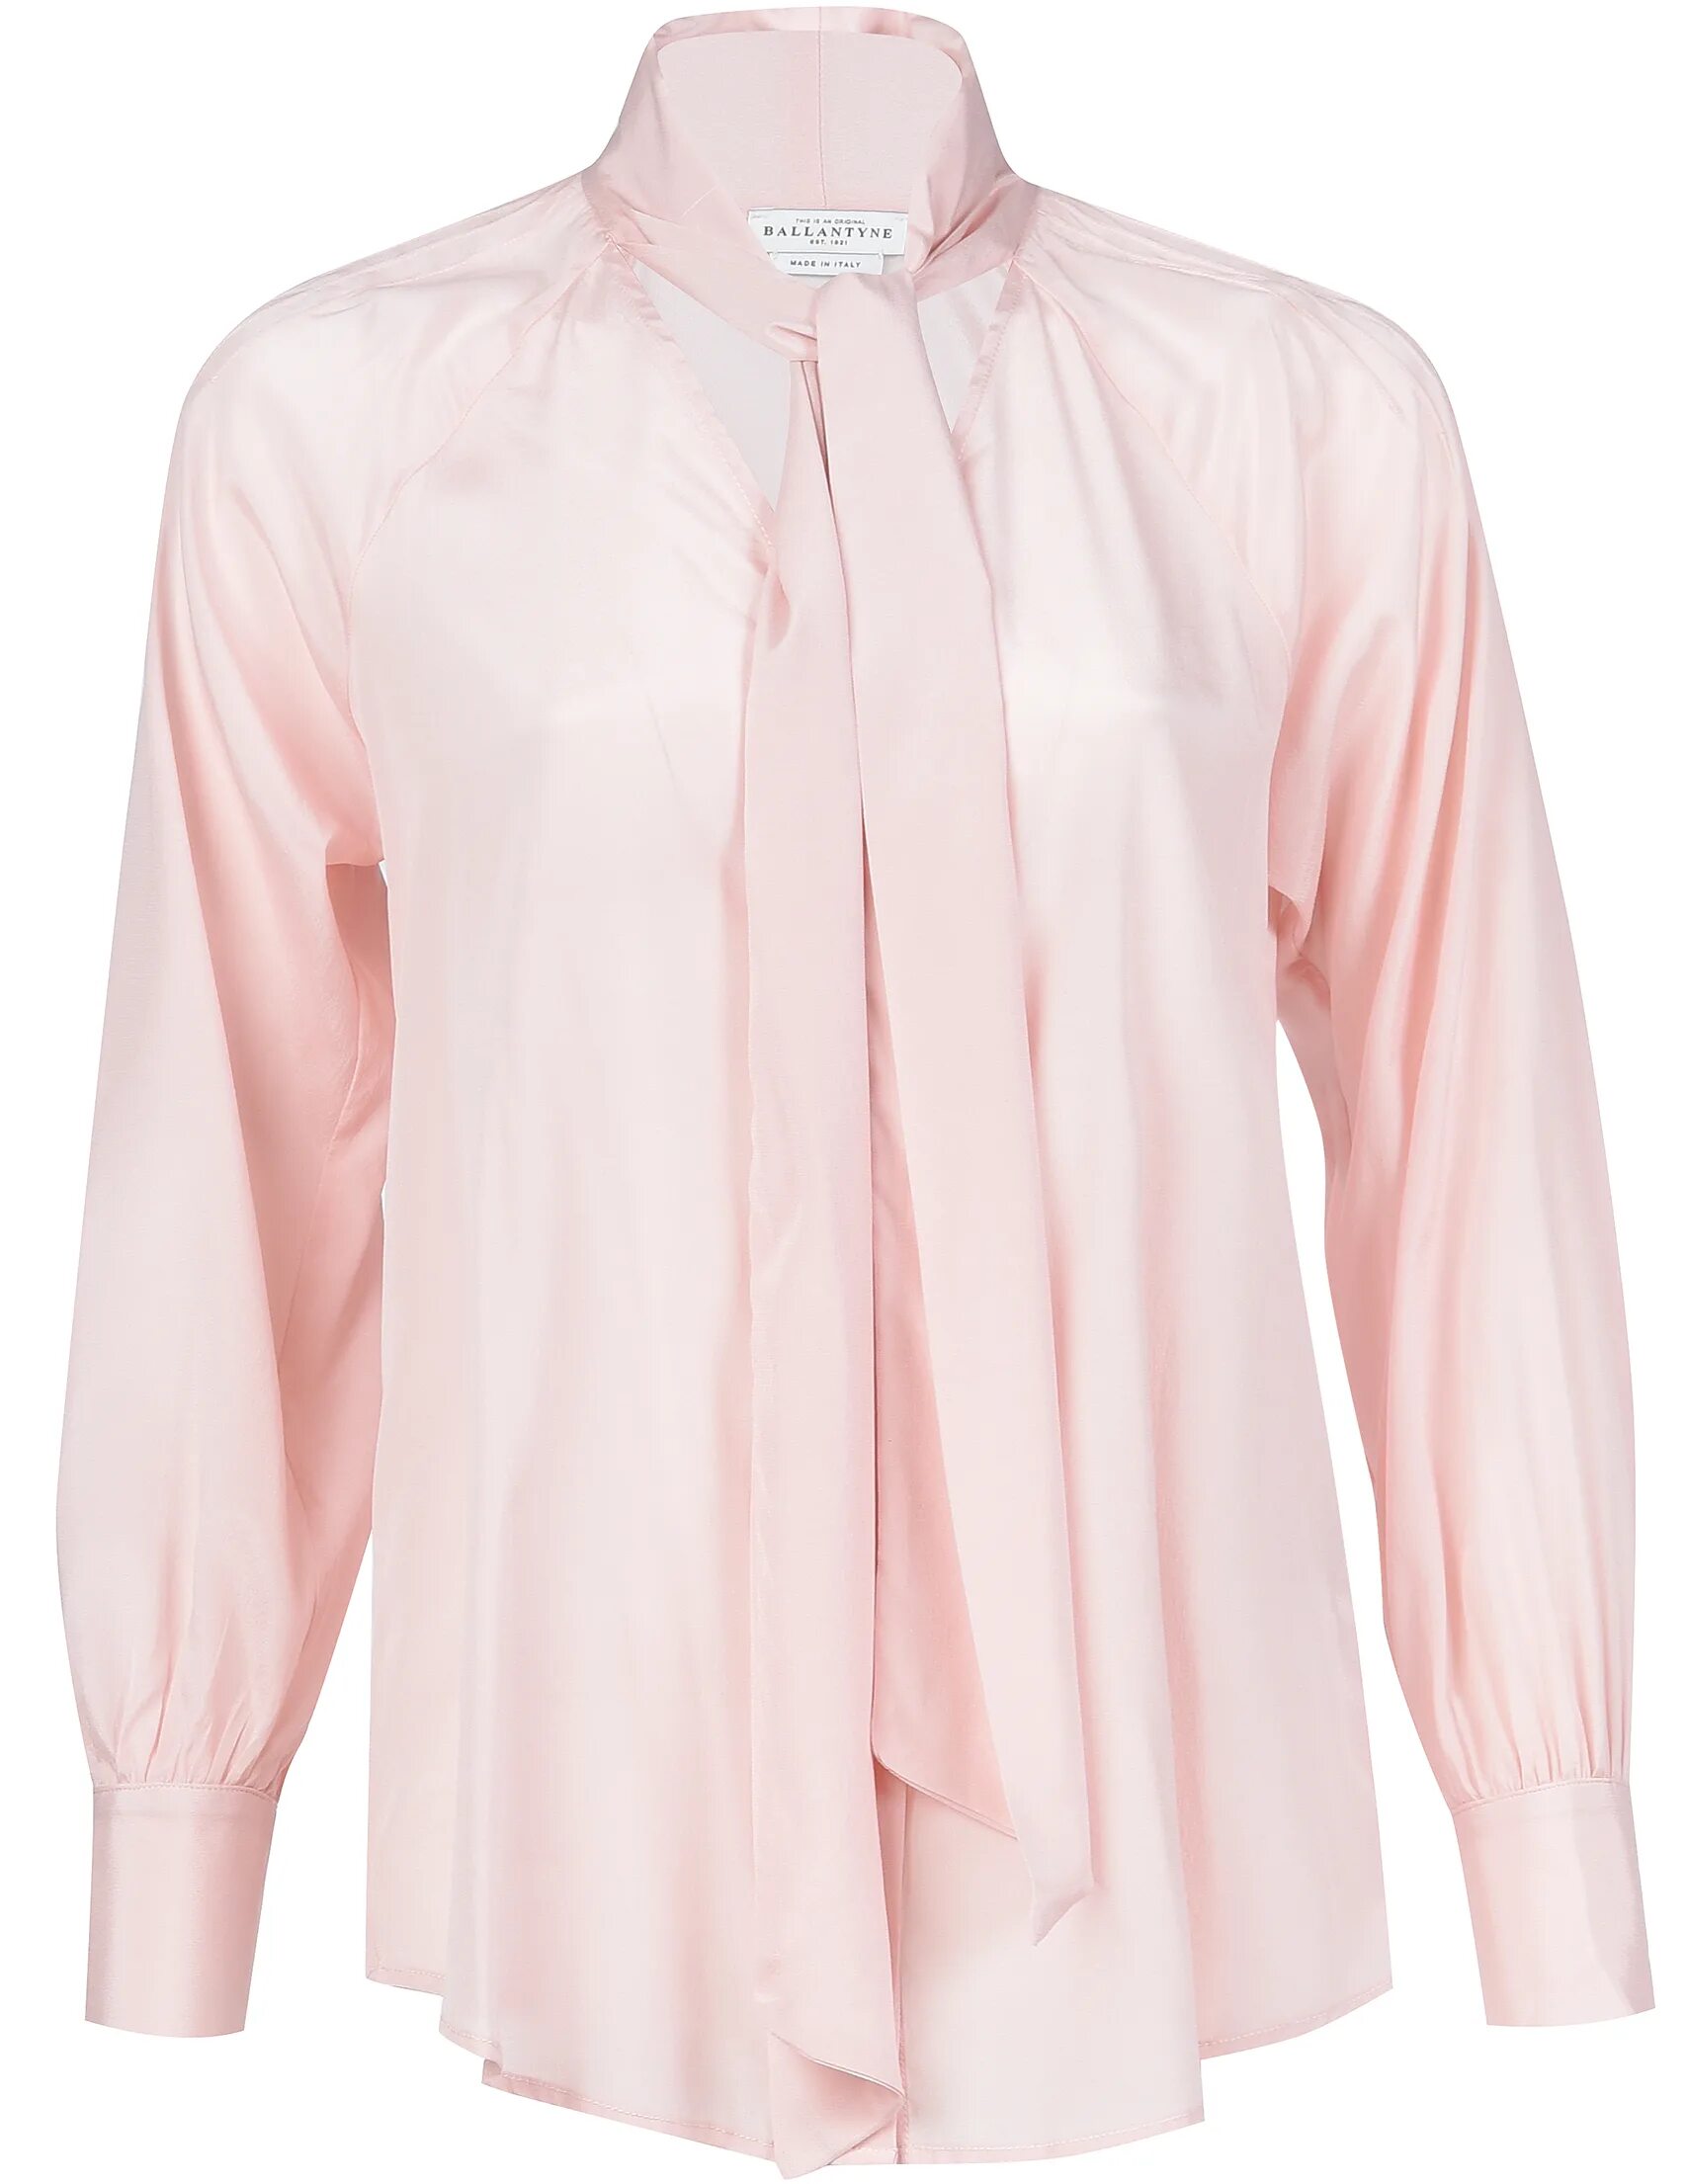 Женские блузки розовые. Розовая блузка. Розовая шелковая блузка. Розовая шелковая рубашка. Розовая блуза женская.